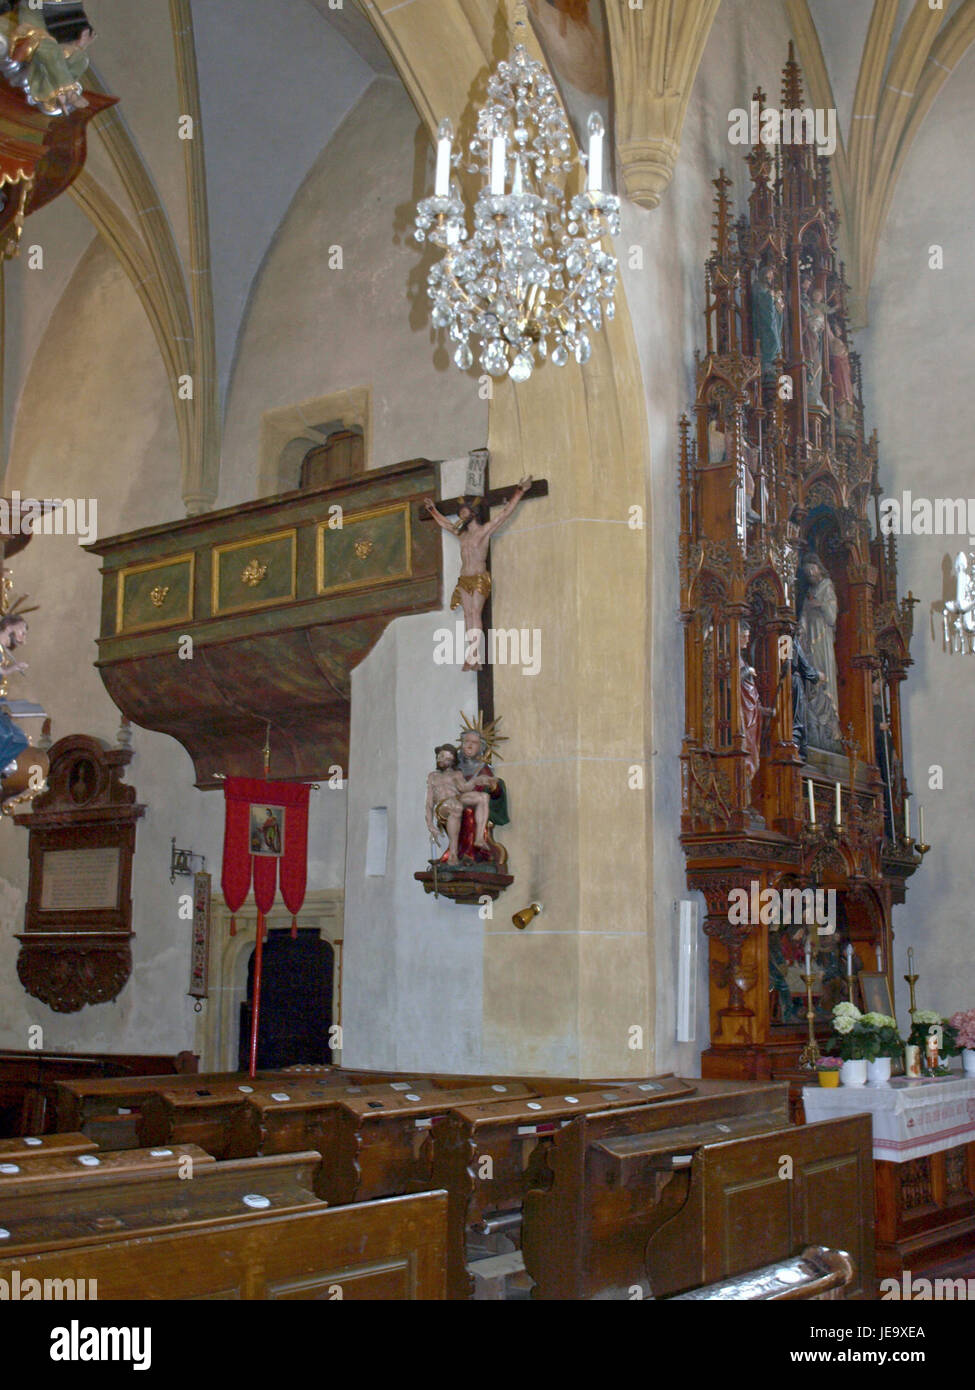 2013.04.24 - Haidershofen - Pfarrkirche hl. Severin und Friedhof - 17 Stock Photo